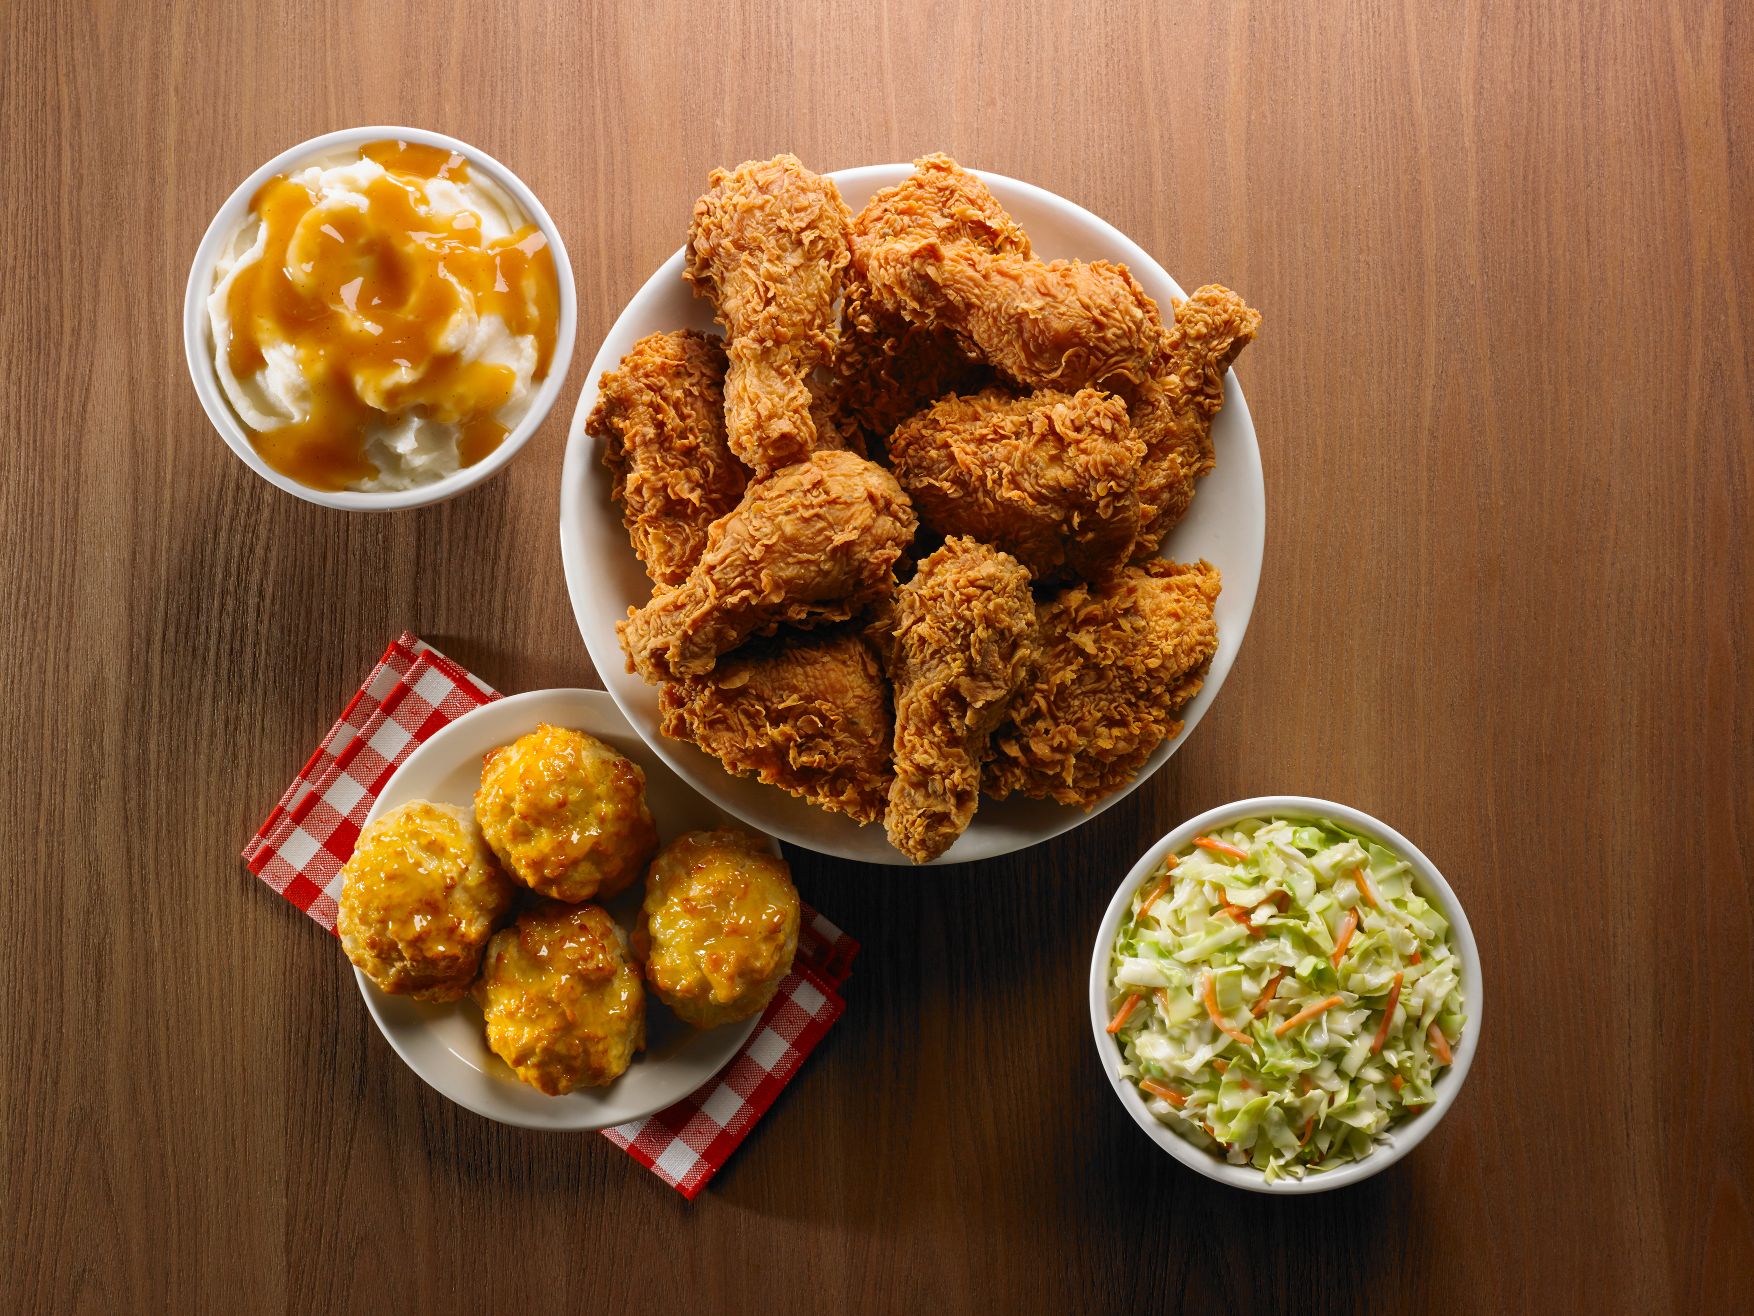 Texas Chicken (North Spring Bizhub) - Dine, Shop, Earn